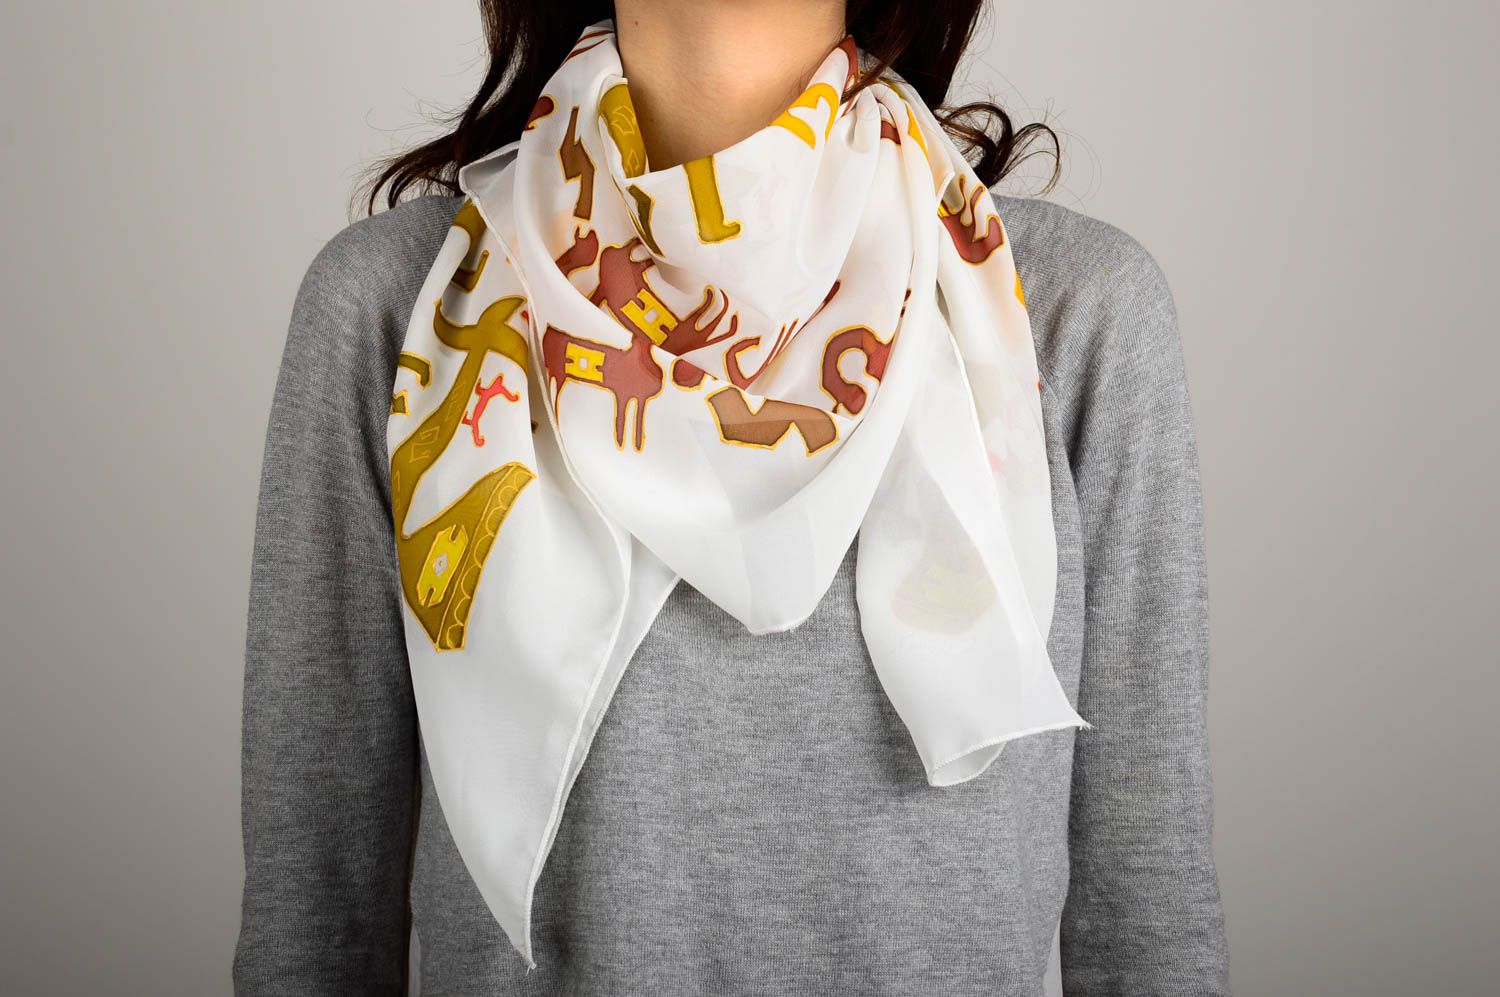 Шейный платок хэнд мейд женская шаль очень оригинальная накидка на плечи фото 1